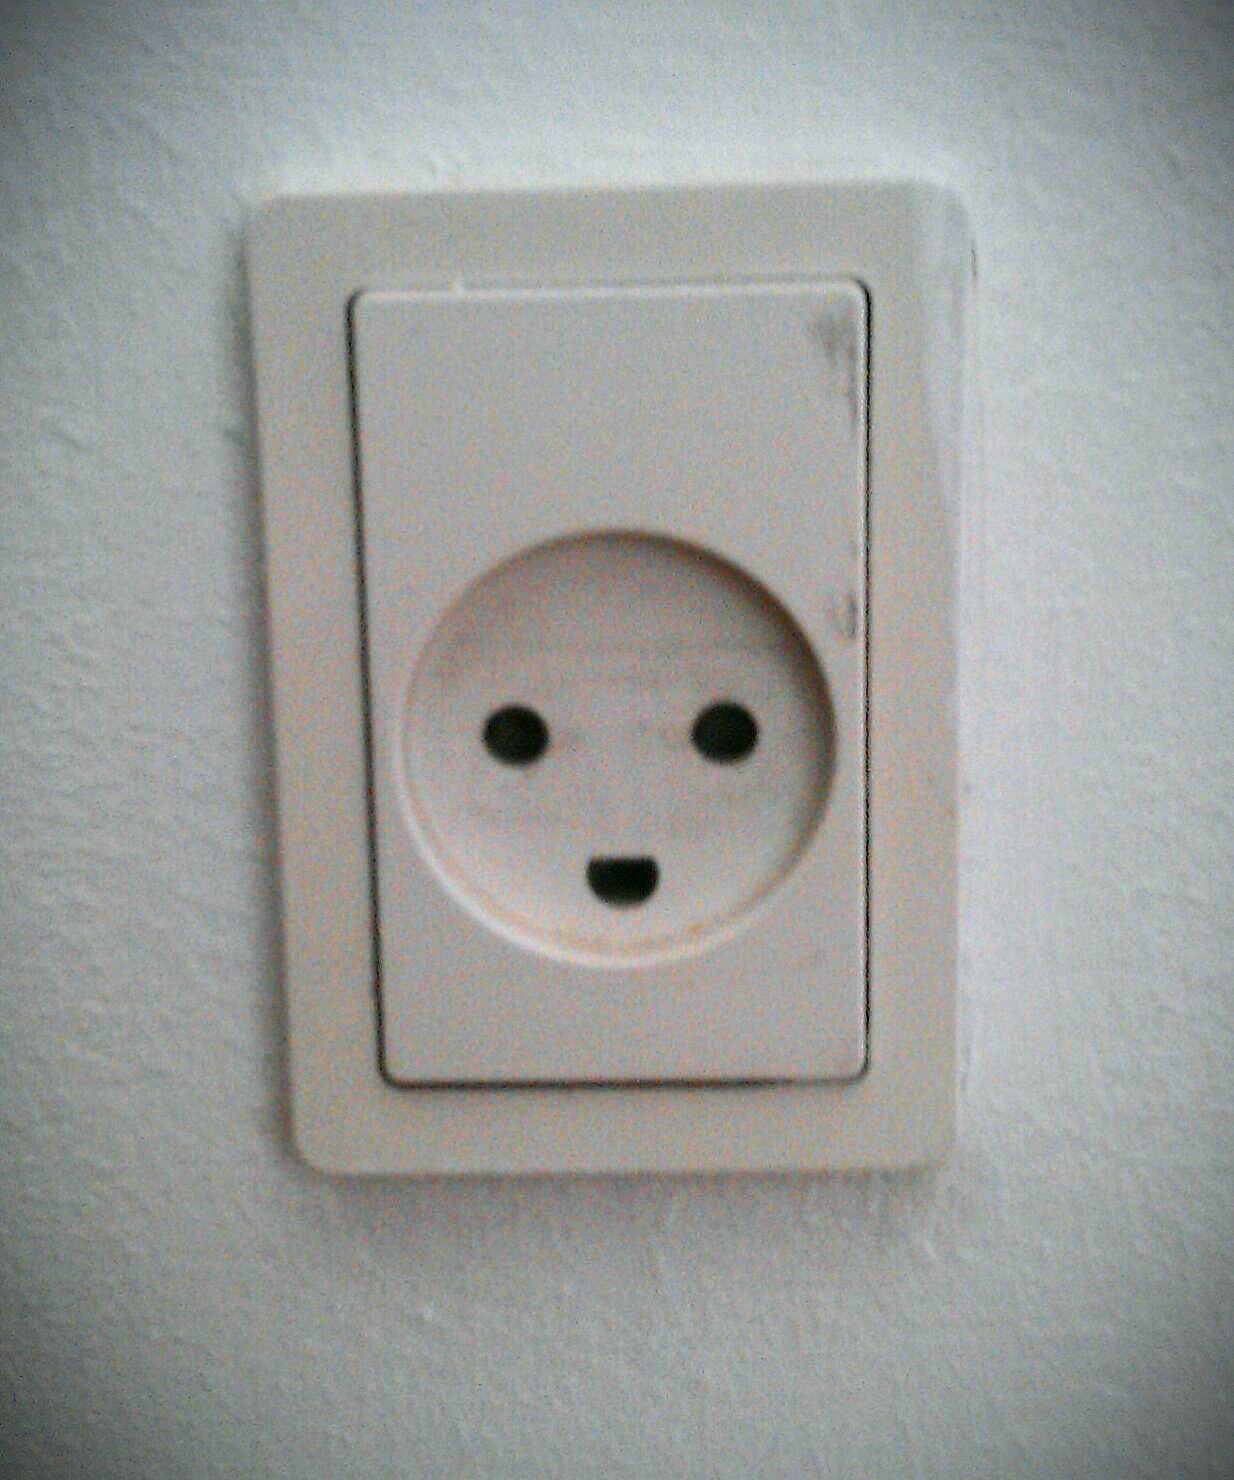 Danish power sockets smile!